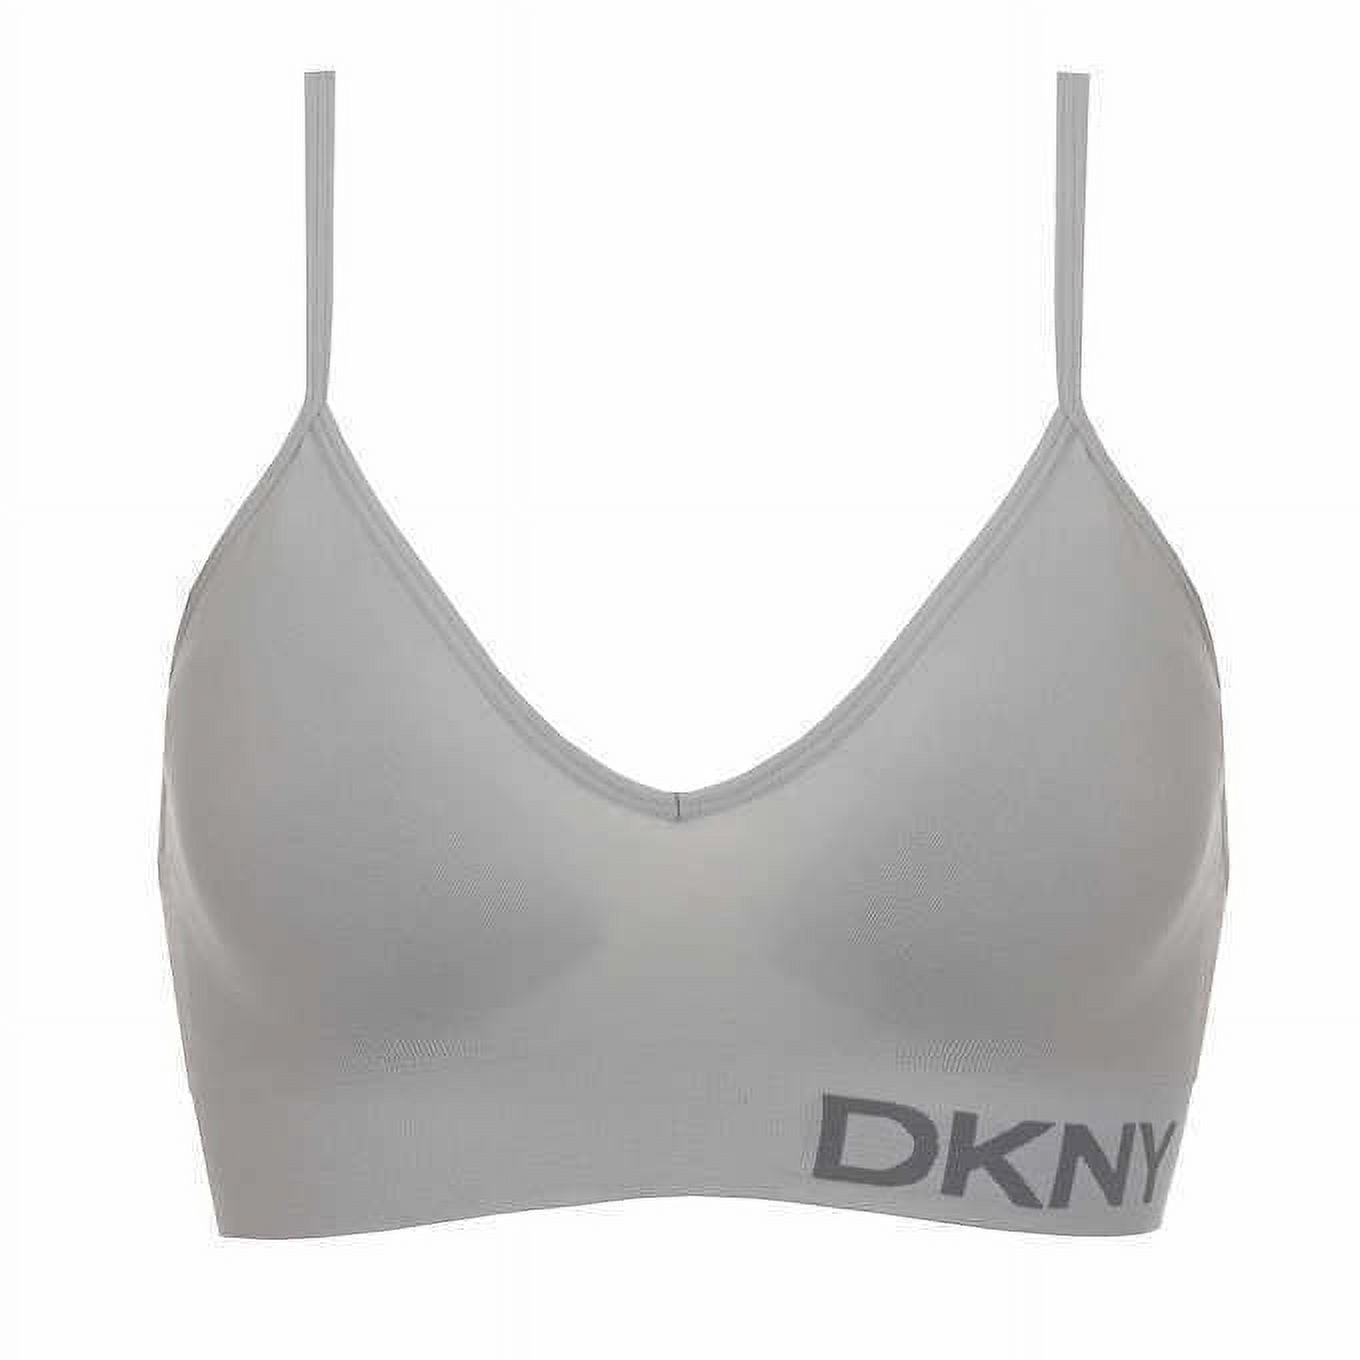 DKNY Ladies’ Seamless Bra, 2-pack